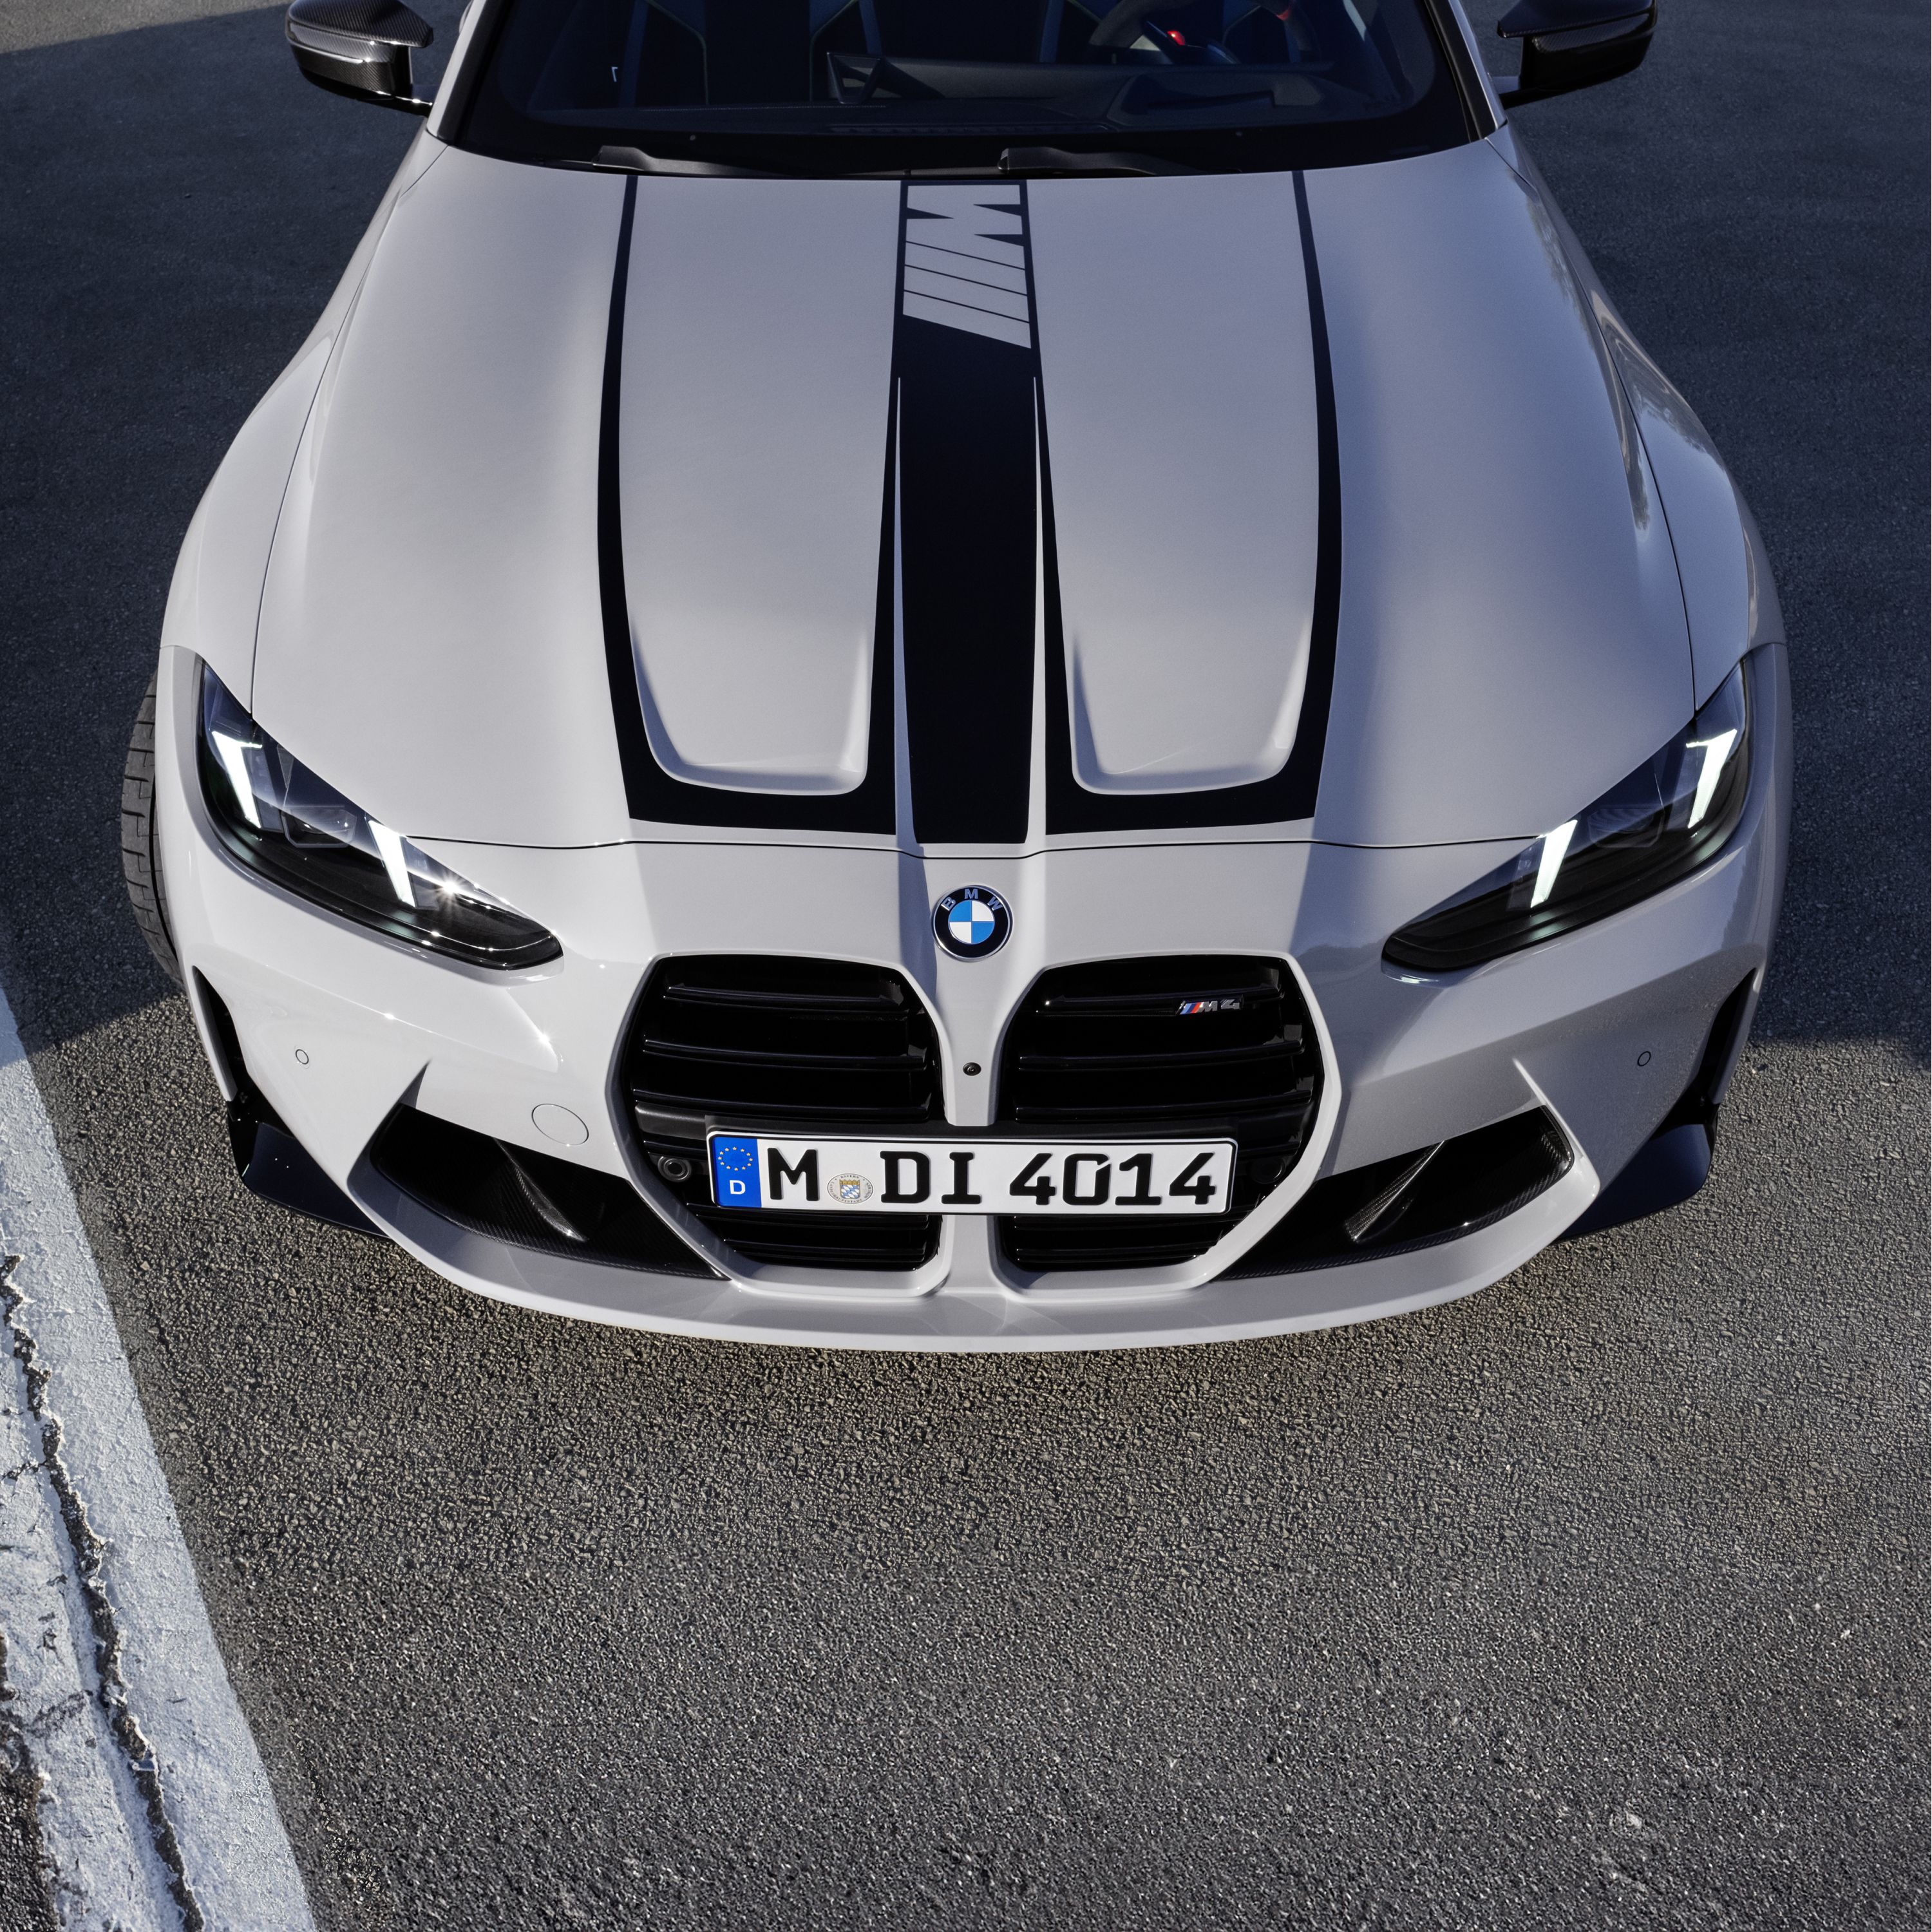 Finansowanie i leasing modeli M coupé BMW serii 4